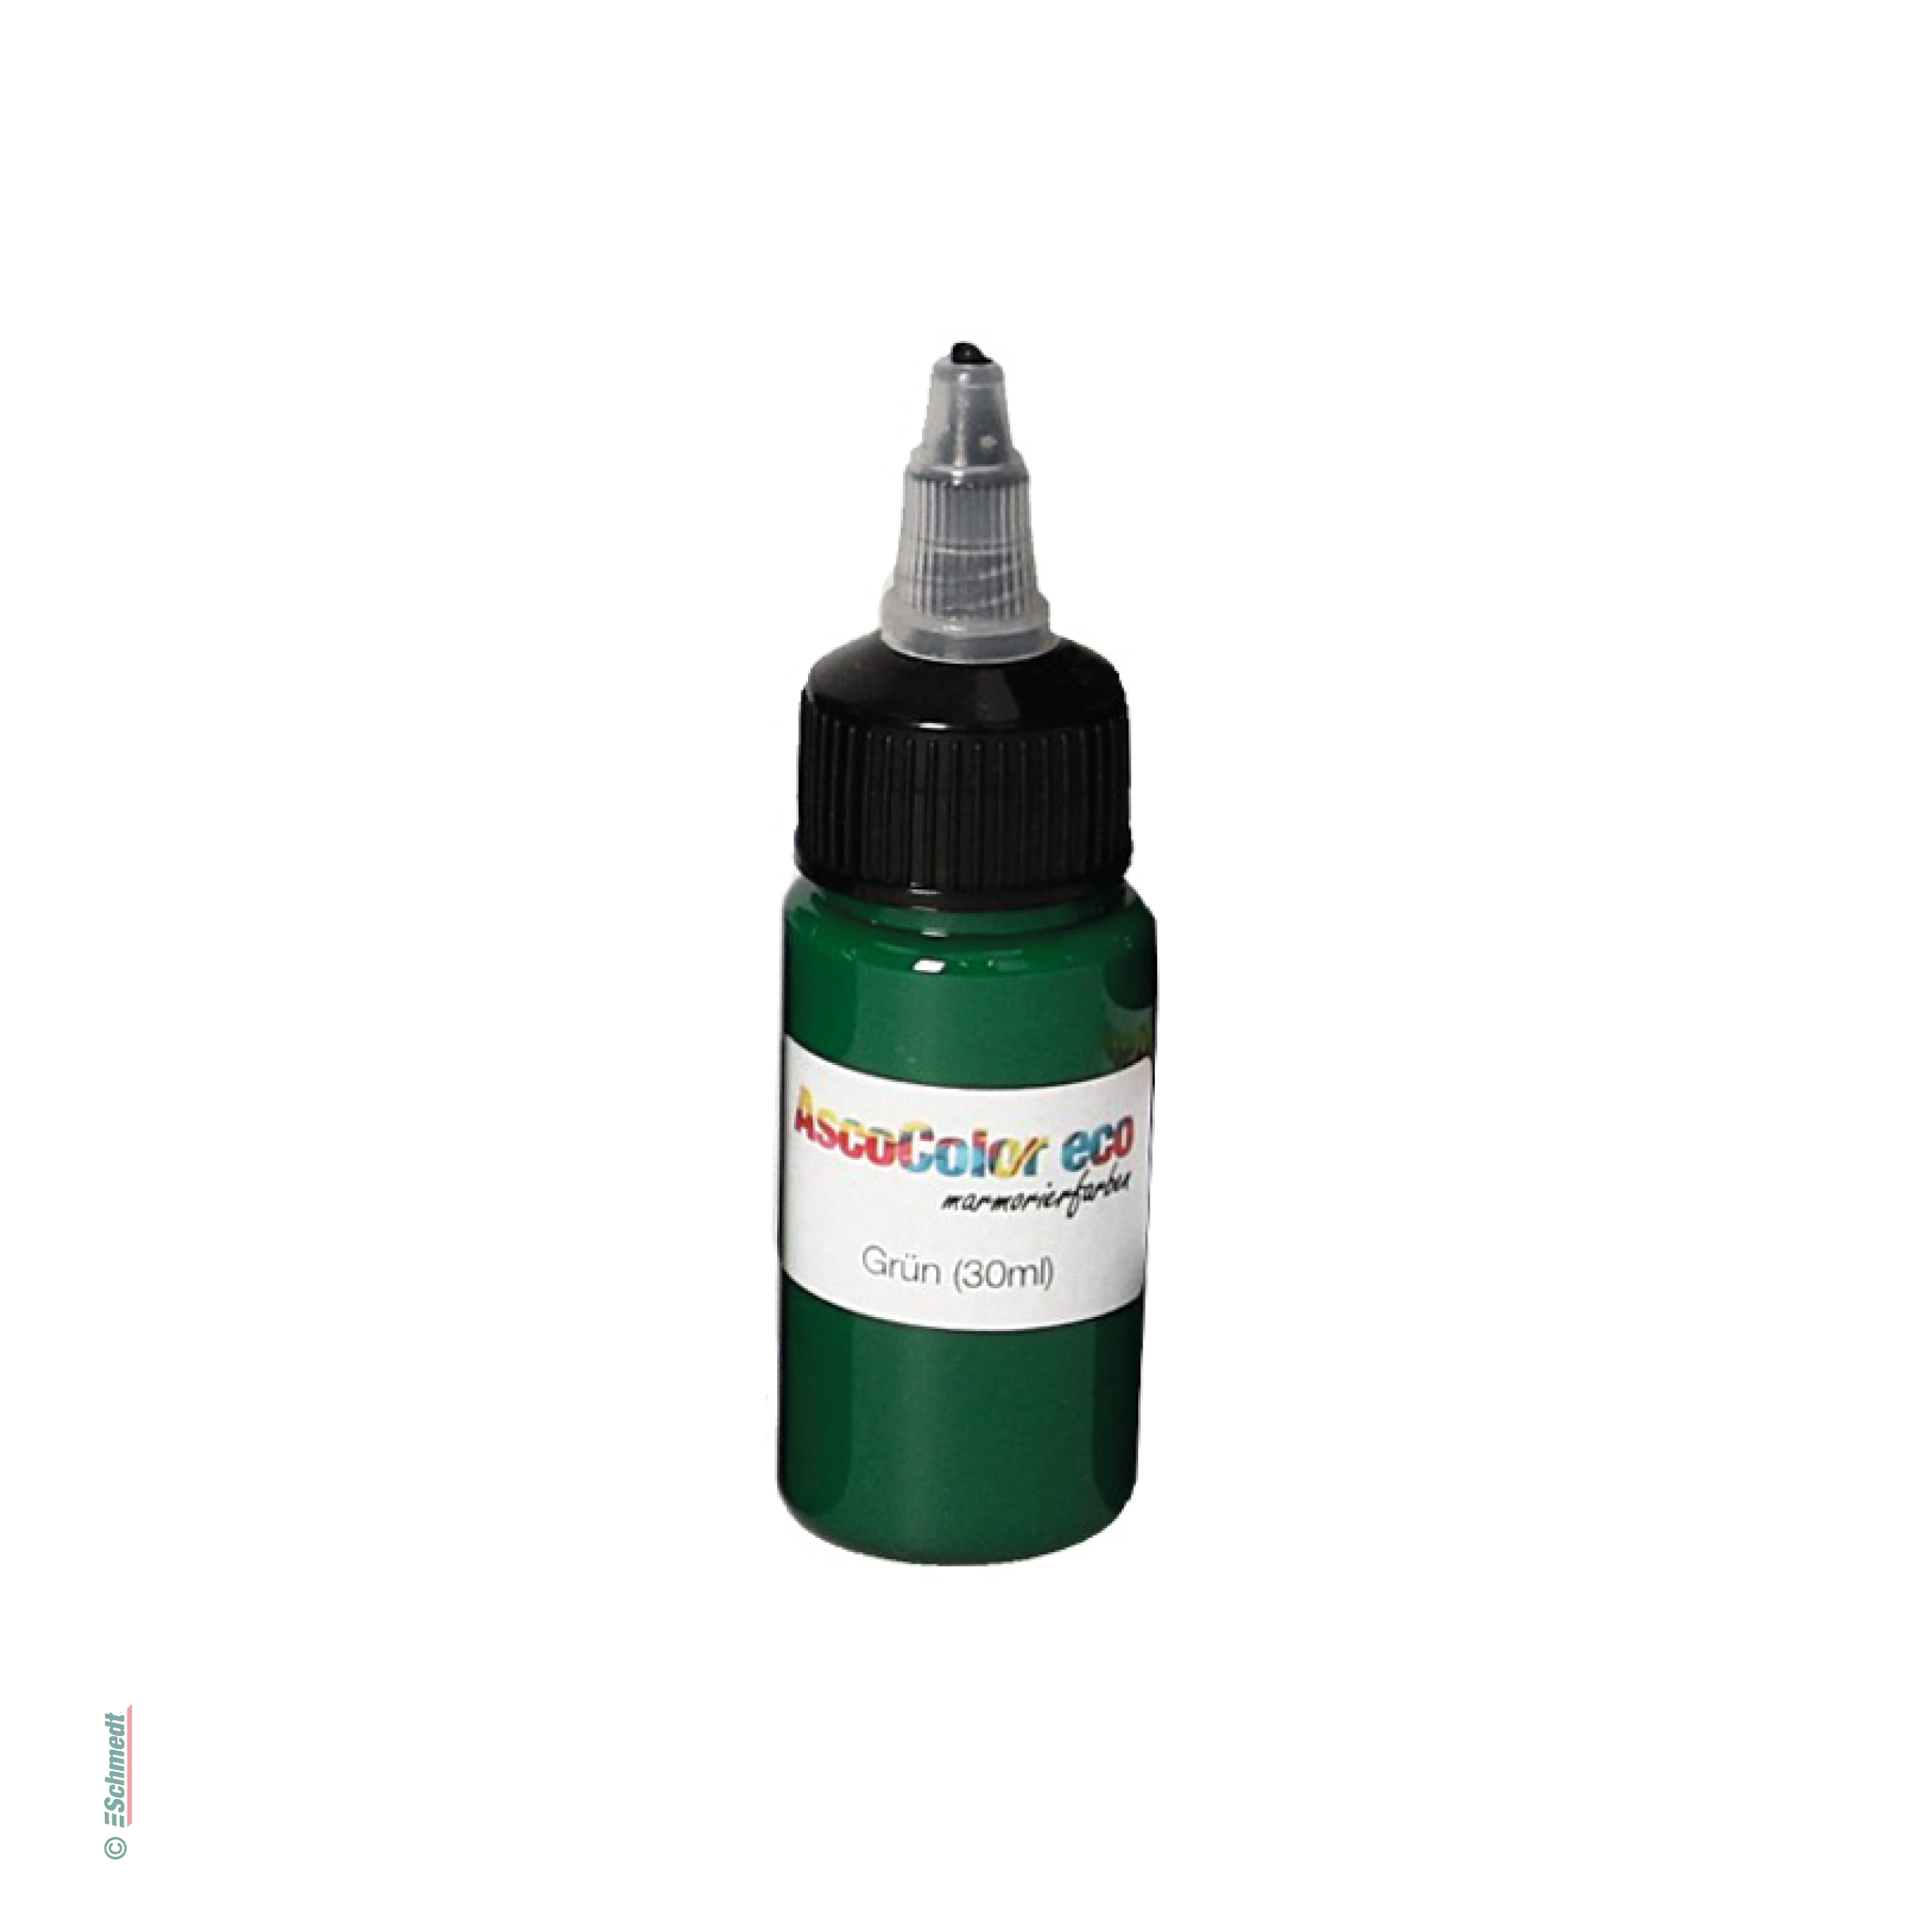 AscoColor eco - Pintura para marmolar - Color 107 - verde - Contenido Botella / 30 ml - Aplicación: para crear sus propios papeles marmolado...